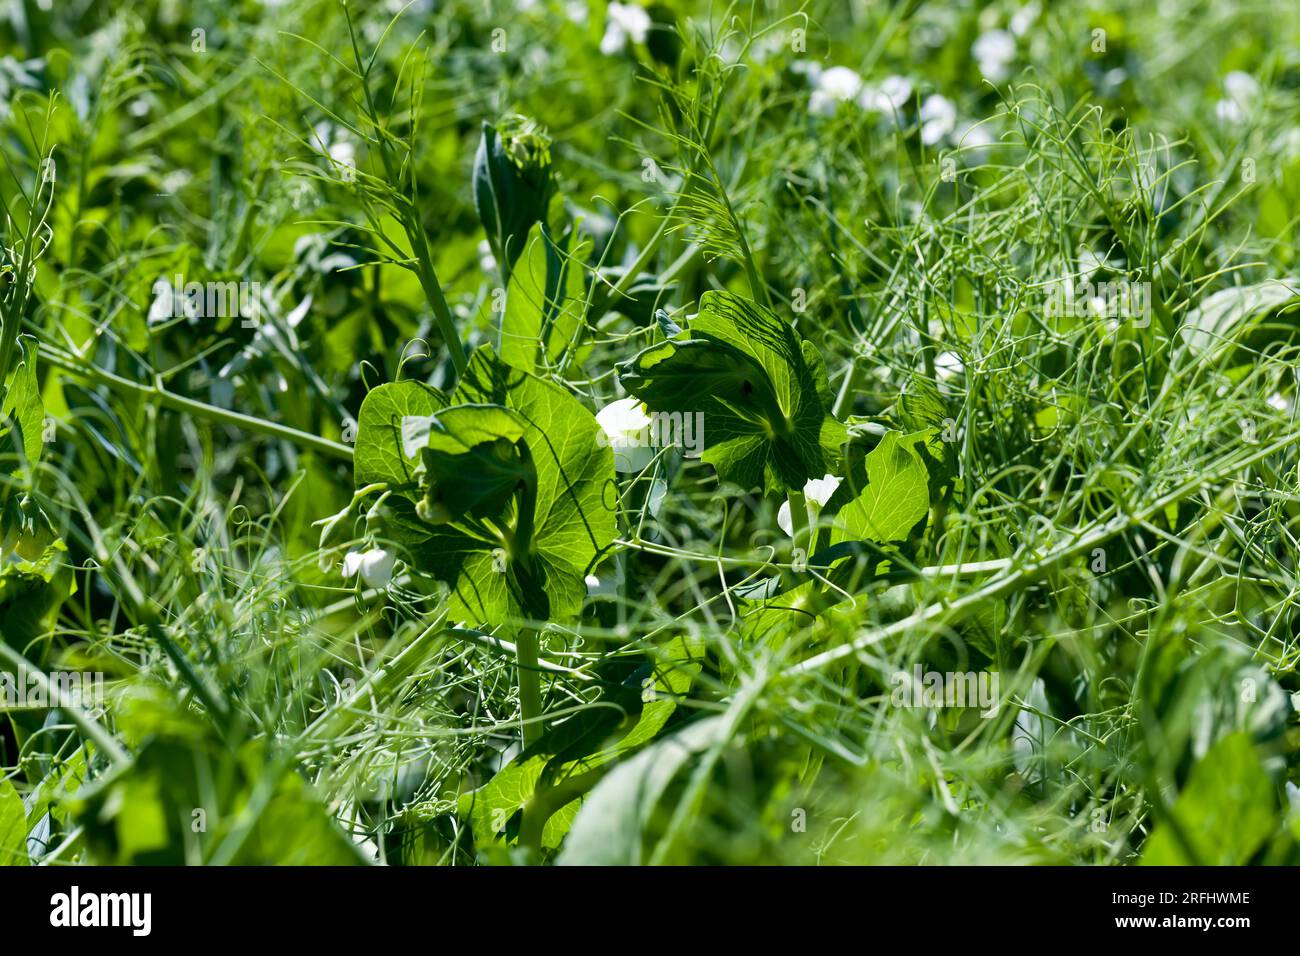 un campo agricolo dove crescono i piselli verdi, i piselli fioriscono con fiori bianchi nella stagione estiva Foto Stock